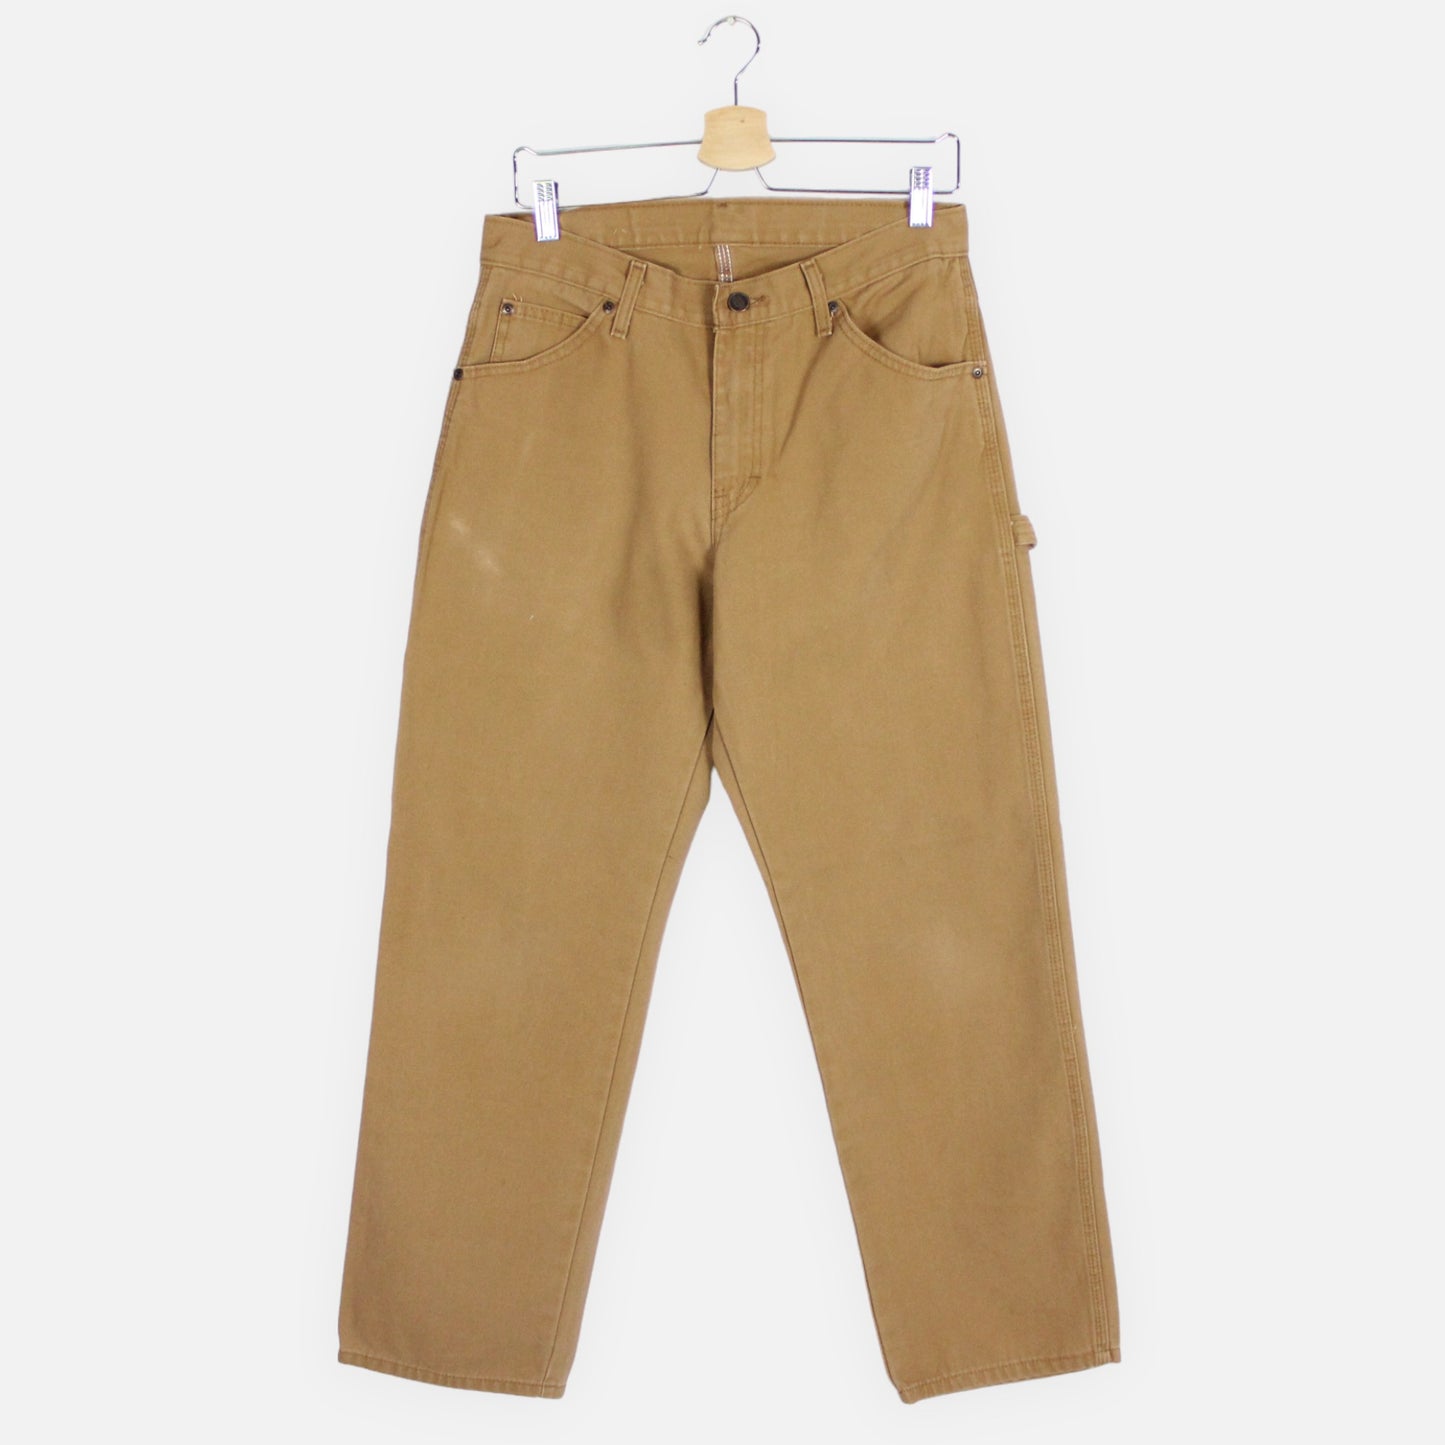 Vintage Dickies Carpenter Pants - 30x30